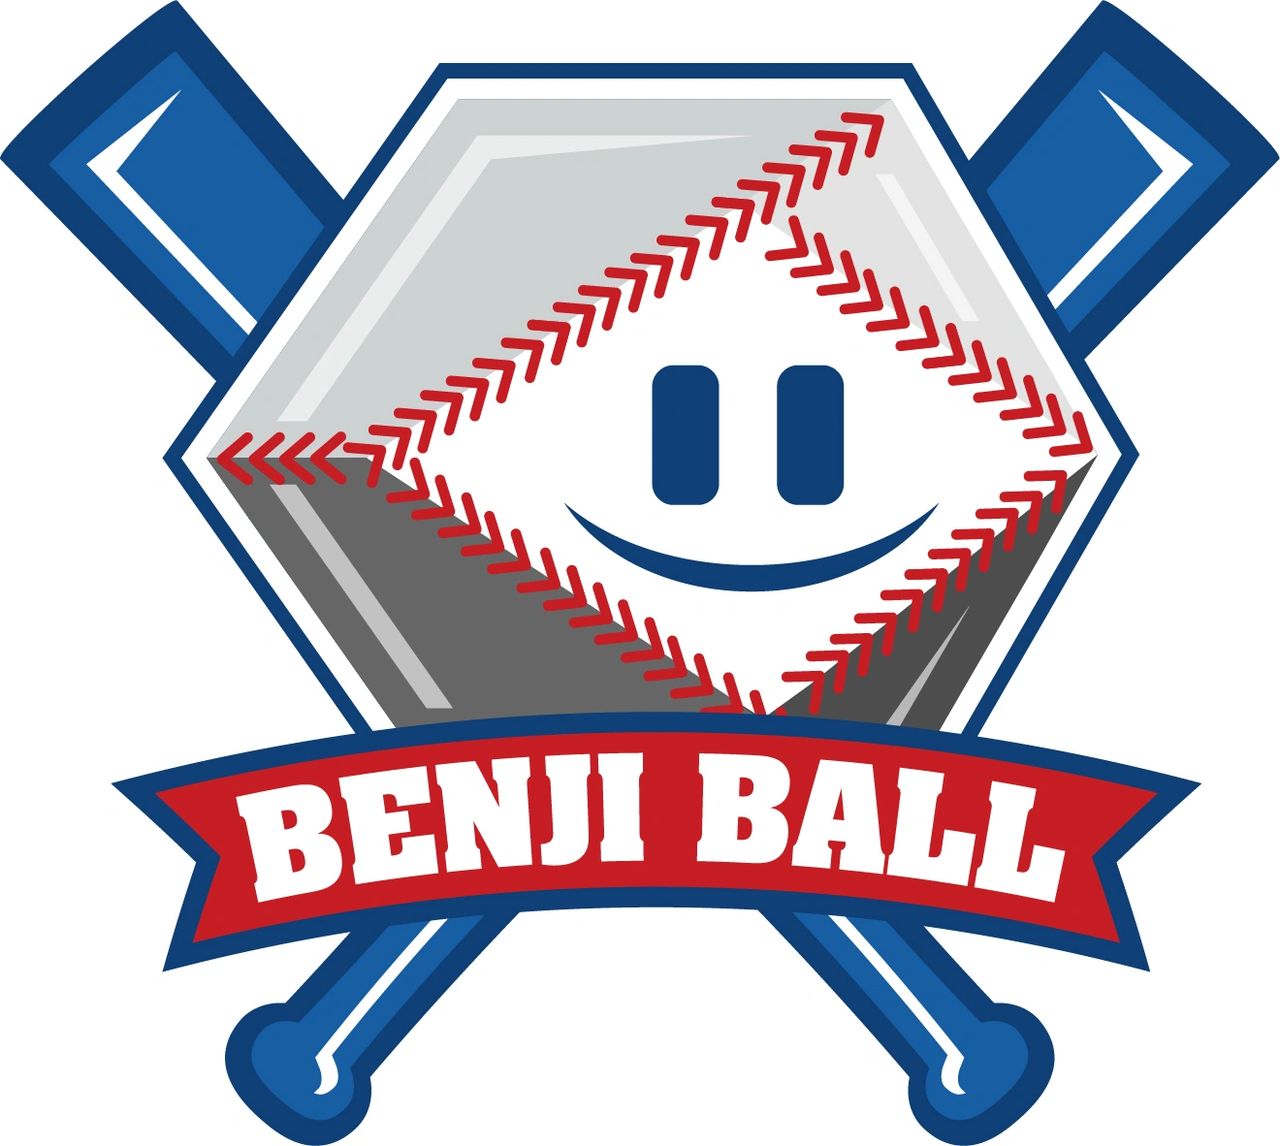 Benjiball logo